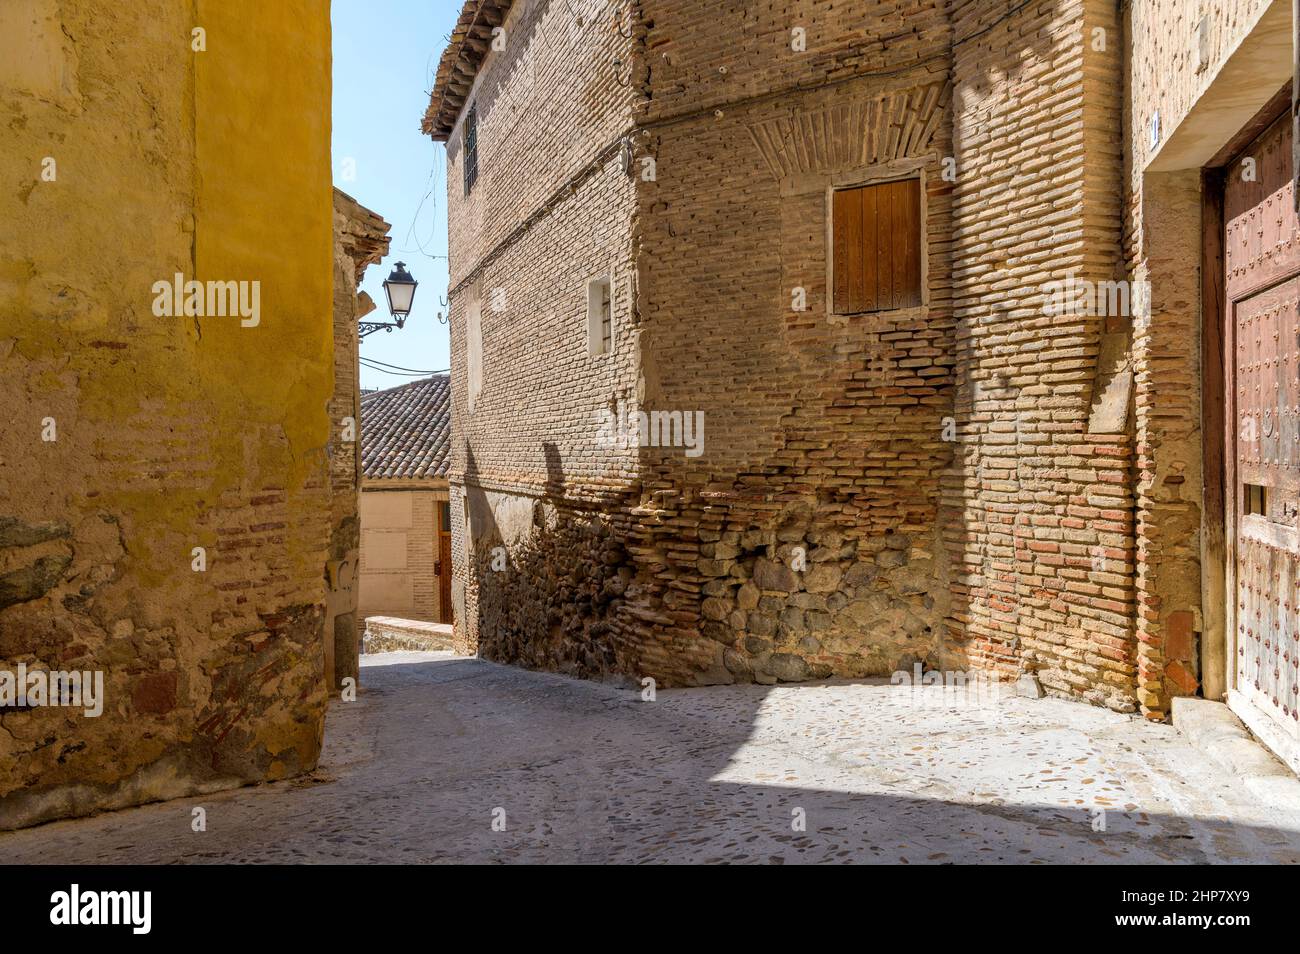 Old Street - la luce del sole del pomeriggio splende in una strada stretta circondata da vecchi edifici in mattoni e pietra nella storica città di Toledo, Spagna. Foto Stock